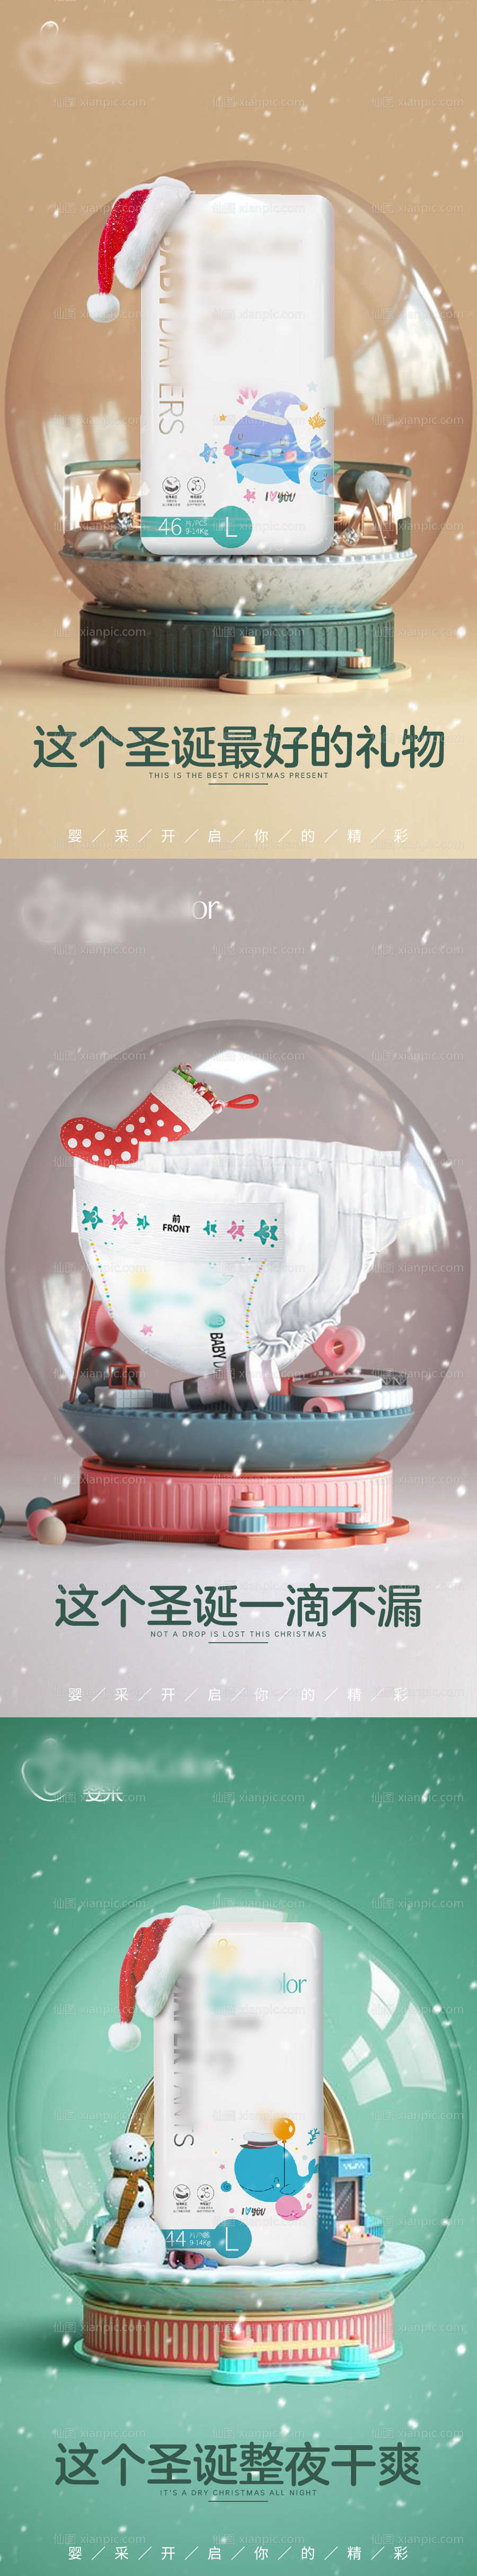 素材乐-母婴纸尿裤产品圣诞水晶球海报